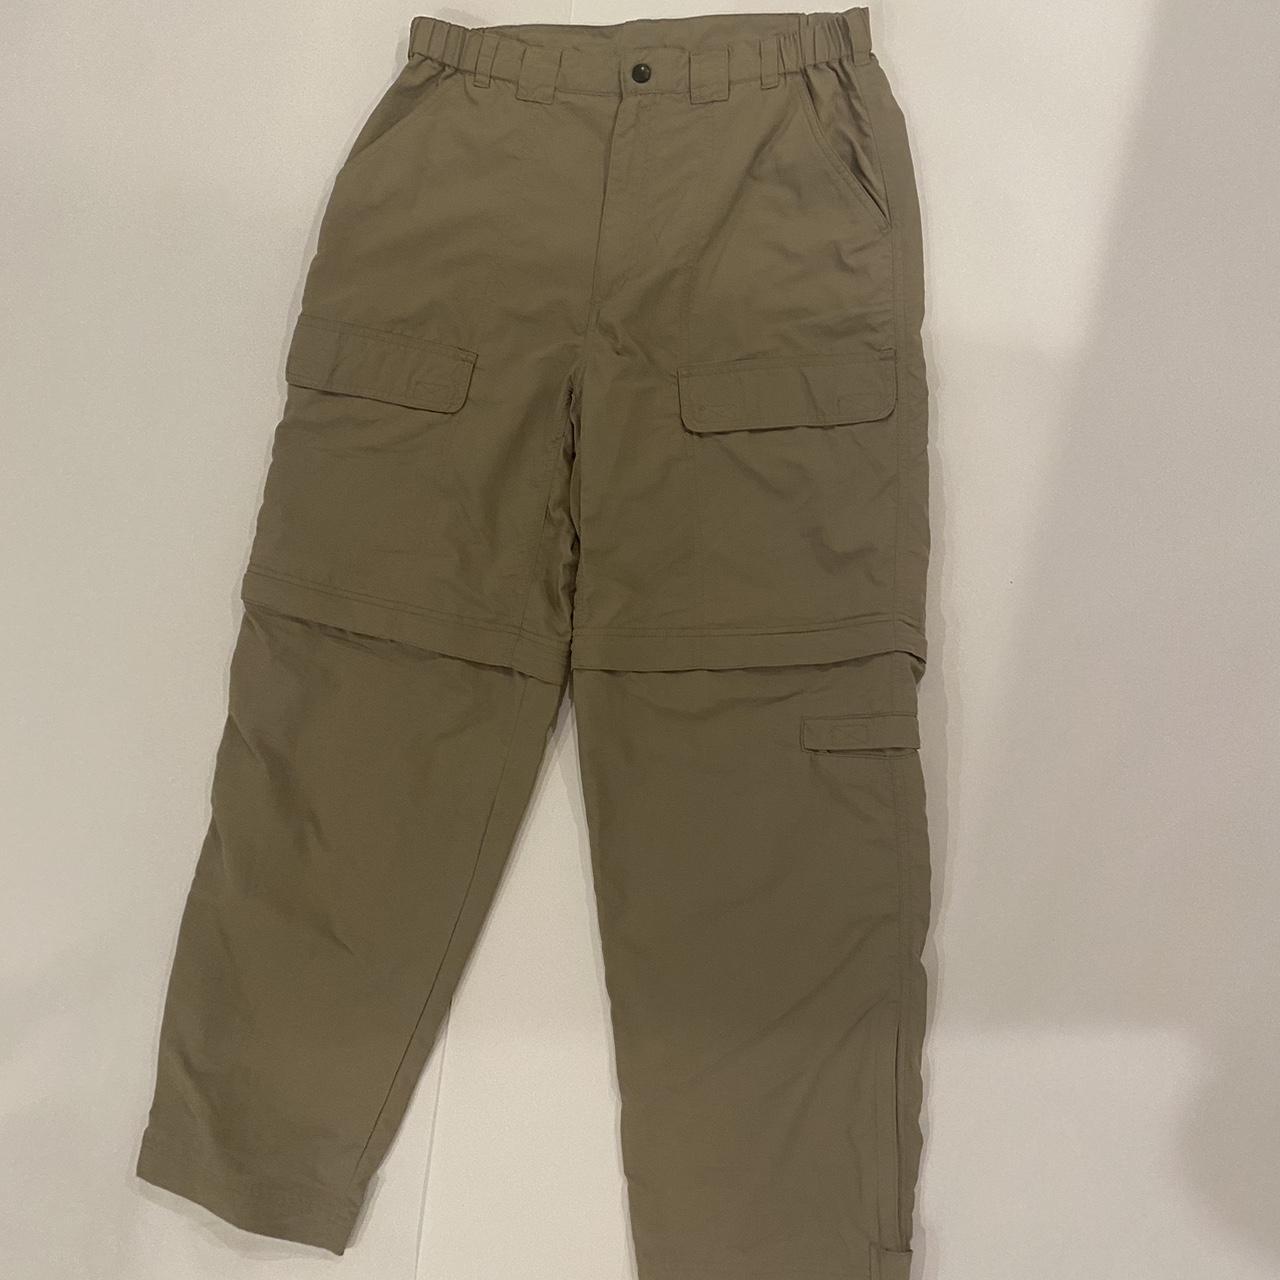 High Sierra Men's Tan Trousers (4)